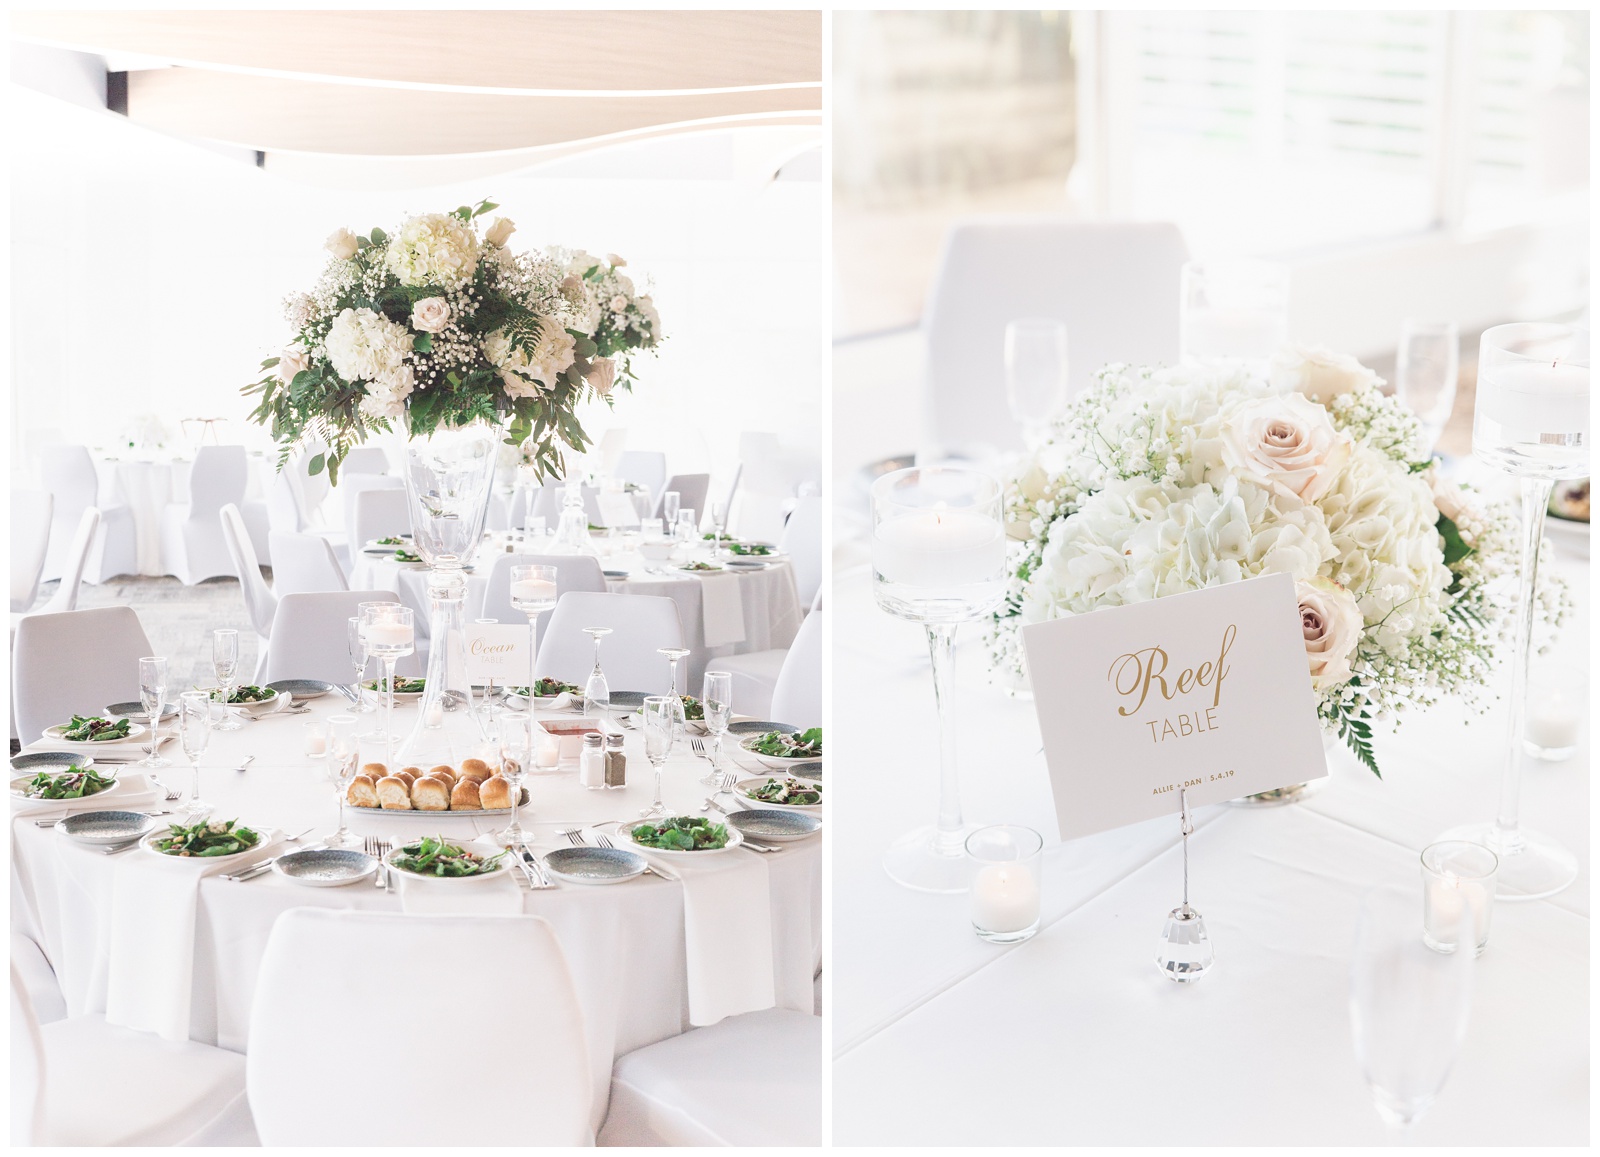 Elegant white on white wedding reception | Matlock and Kelly Photography